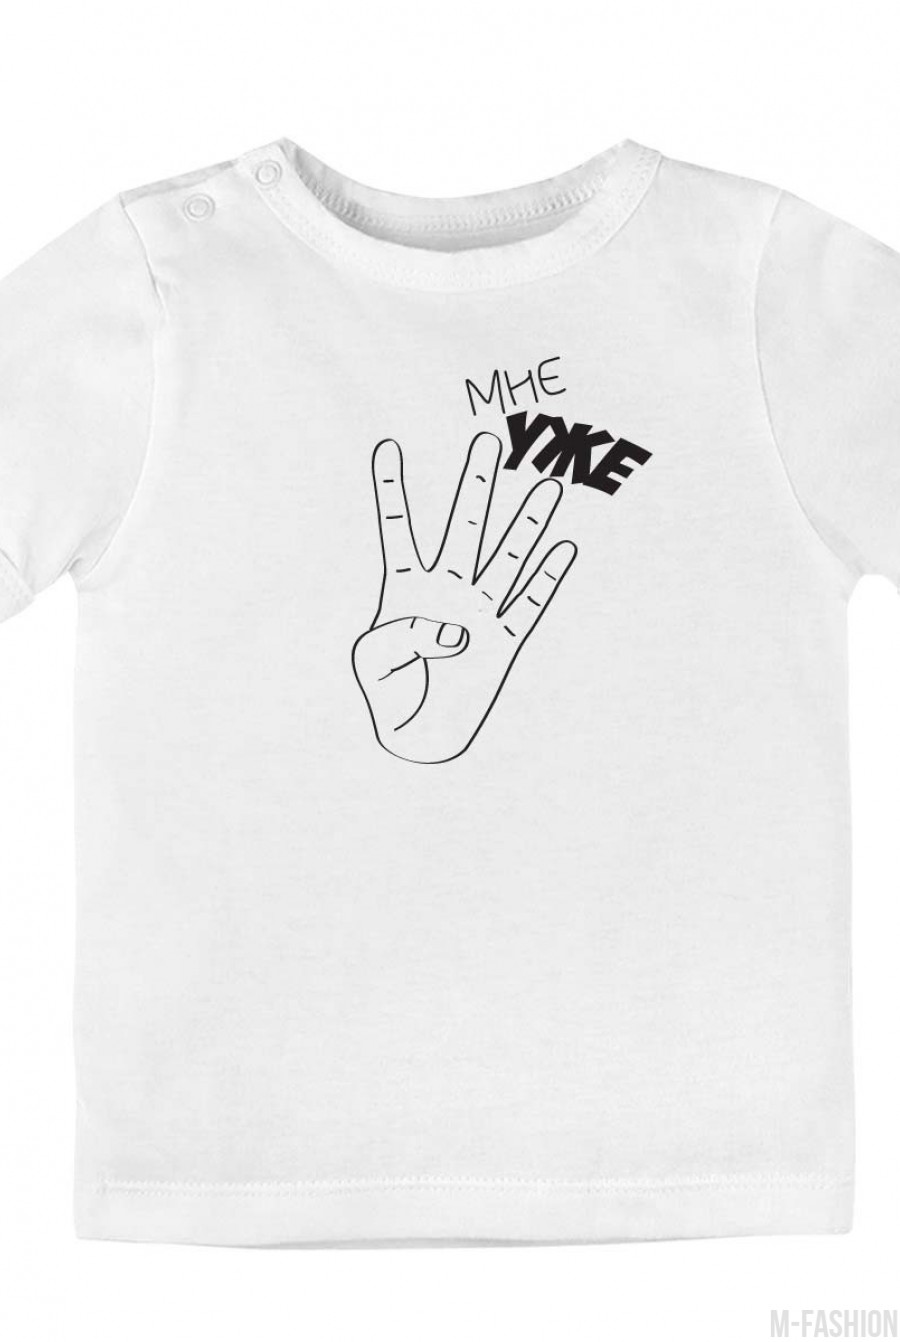 Хлопковая футболка с возможностью индивидуальной печати принта (1-5) из пальцев- Фото 5